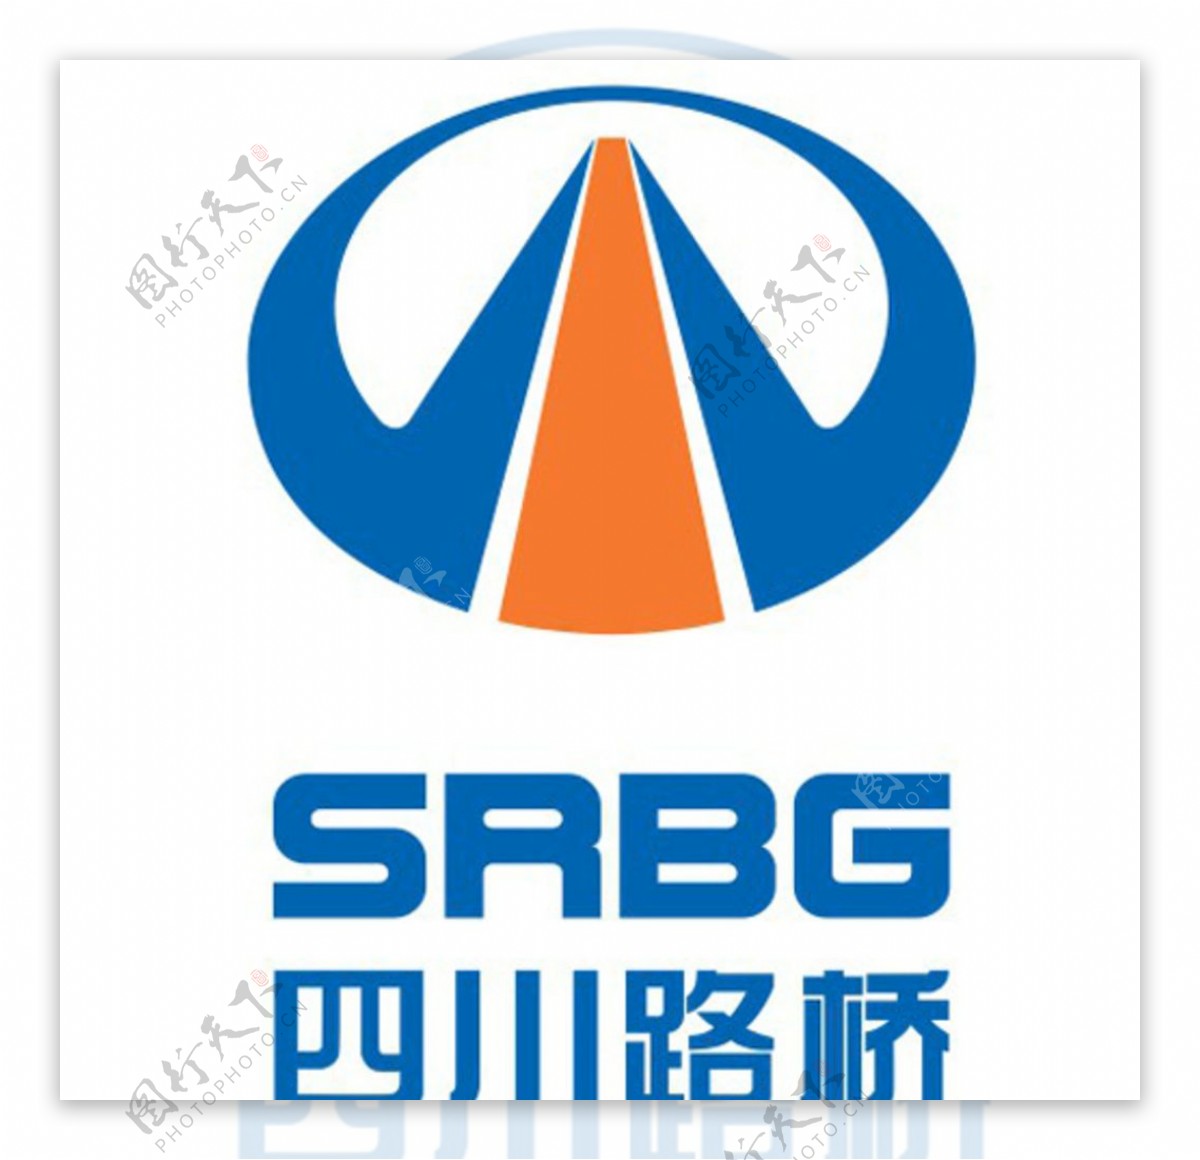 四川路桥logo标识标志图片